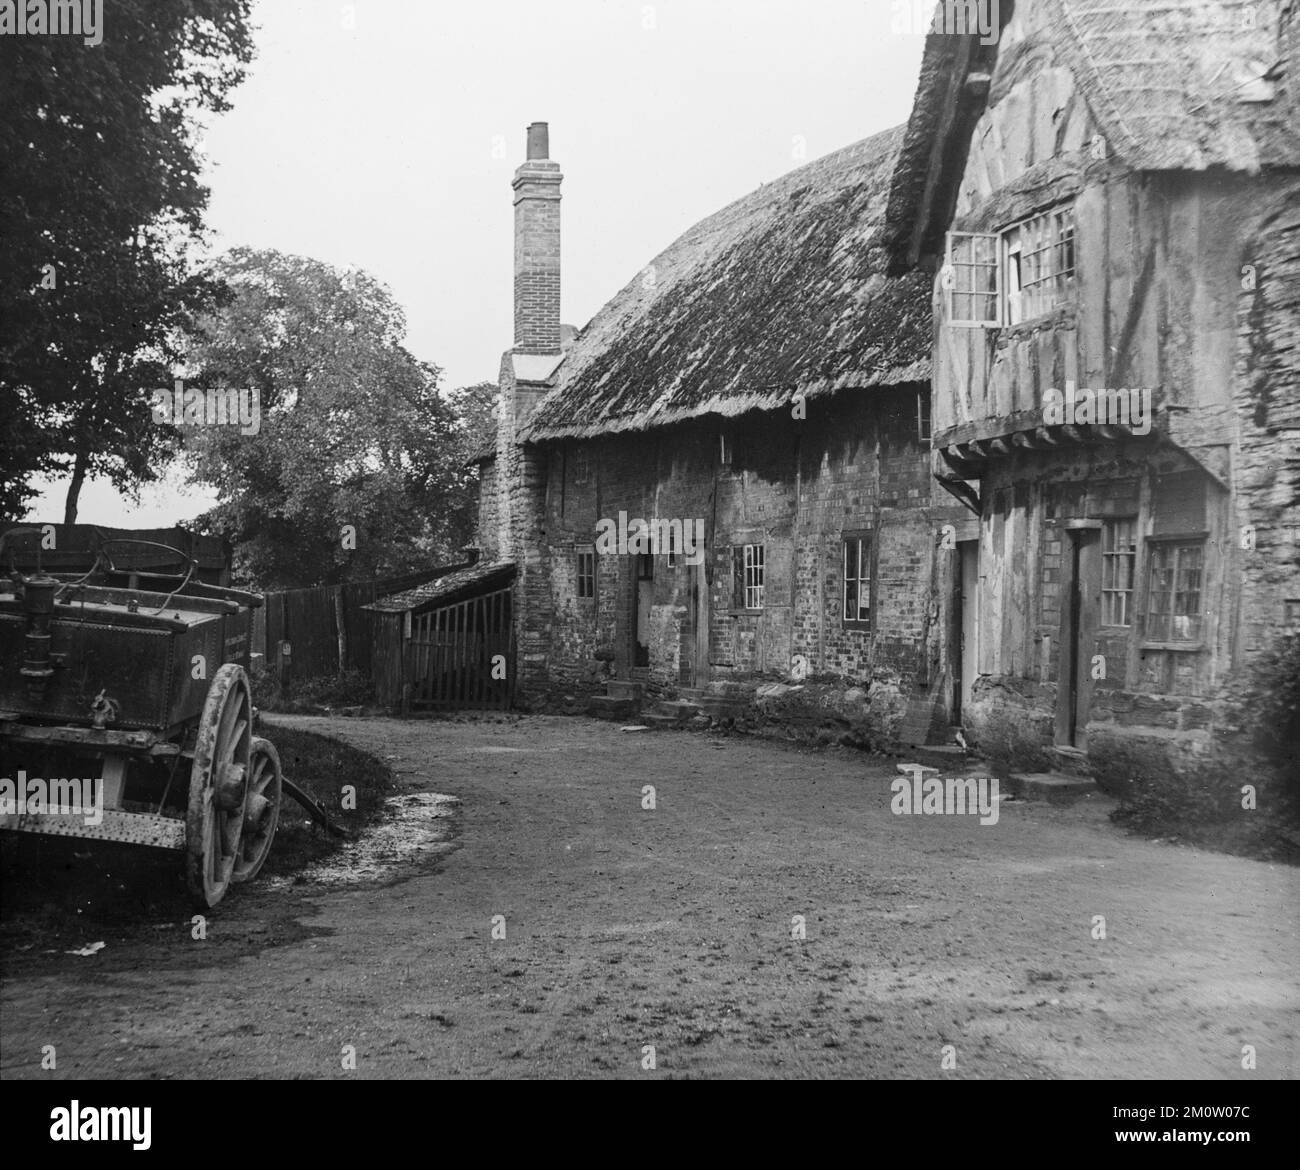 Una fotografia inglese in bianco e nero del tardo 19th° secolo che mostra tradizionali case in mattoni con tetto in paglia in un villaggio con un carretto a cavallo all'esterno. Foto Stock